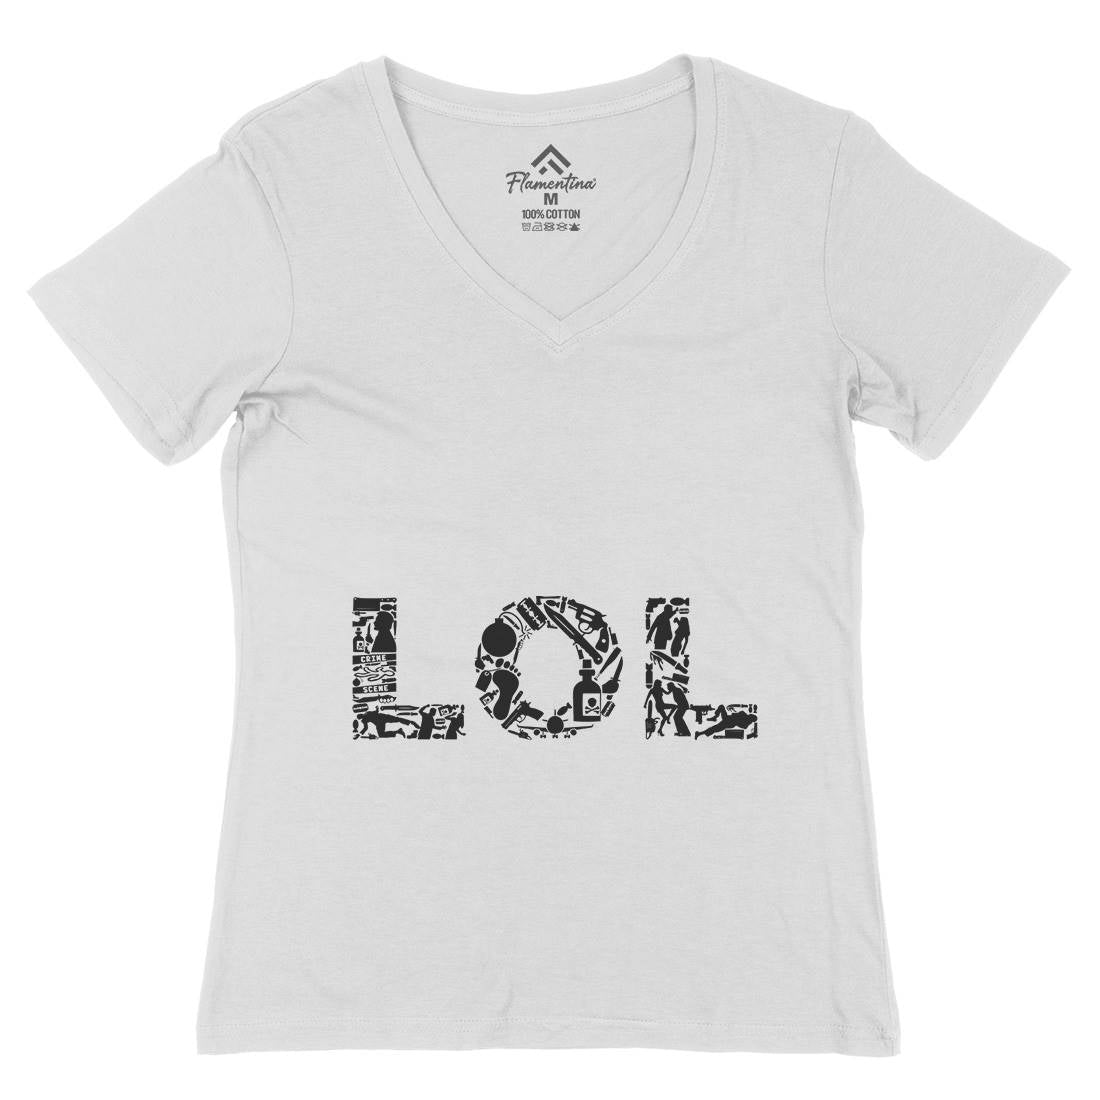 Lol Womens Organic V-Neck T-Shirt Retro B060